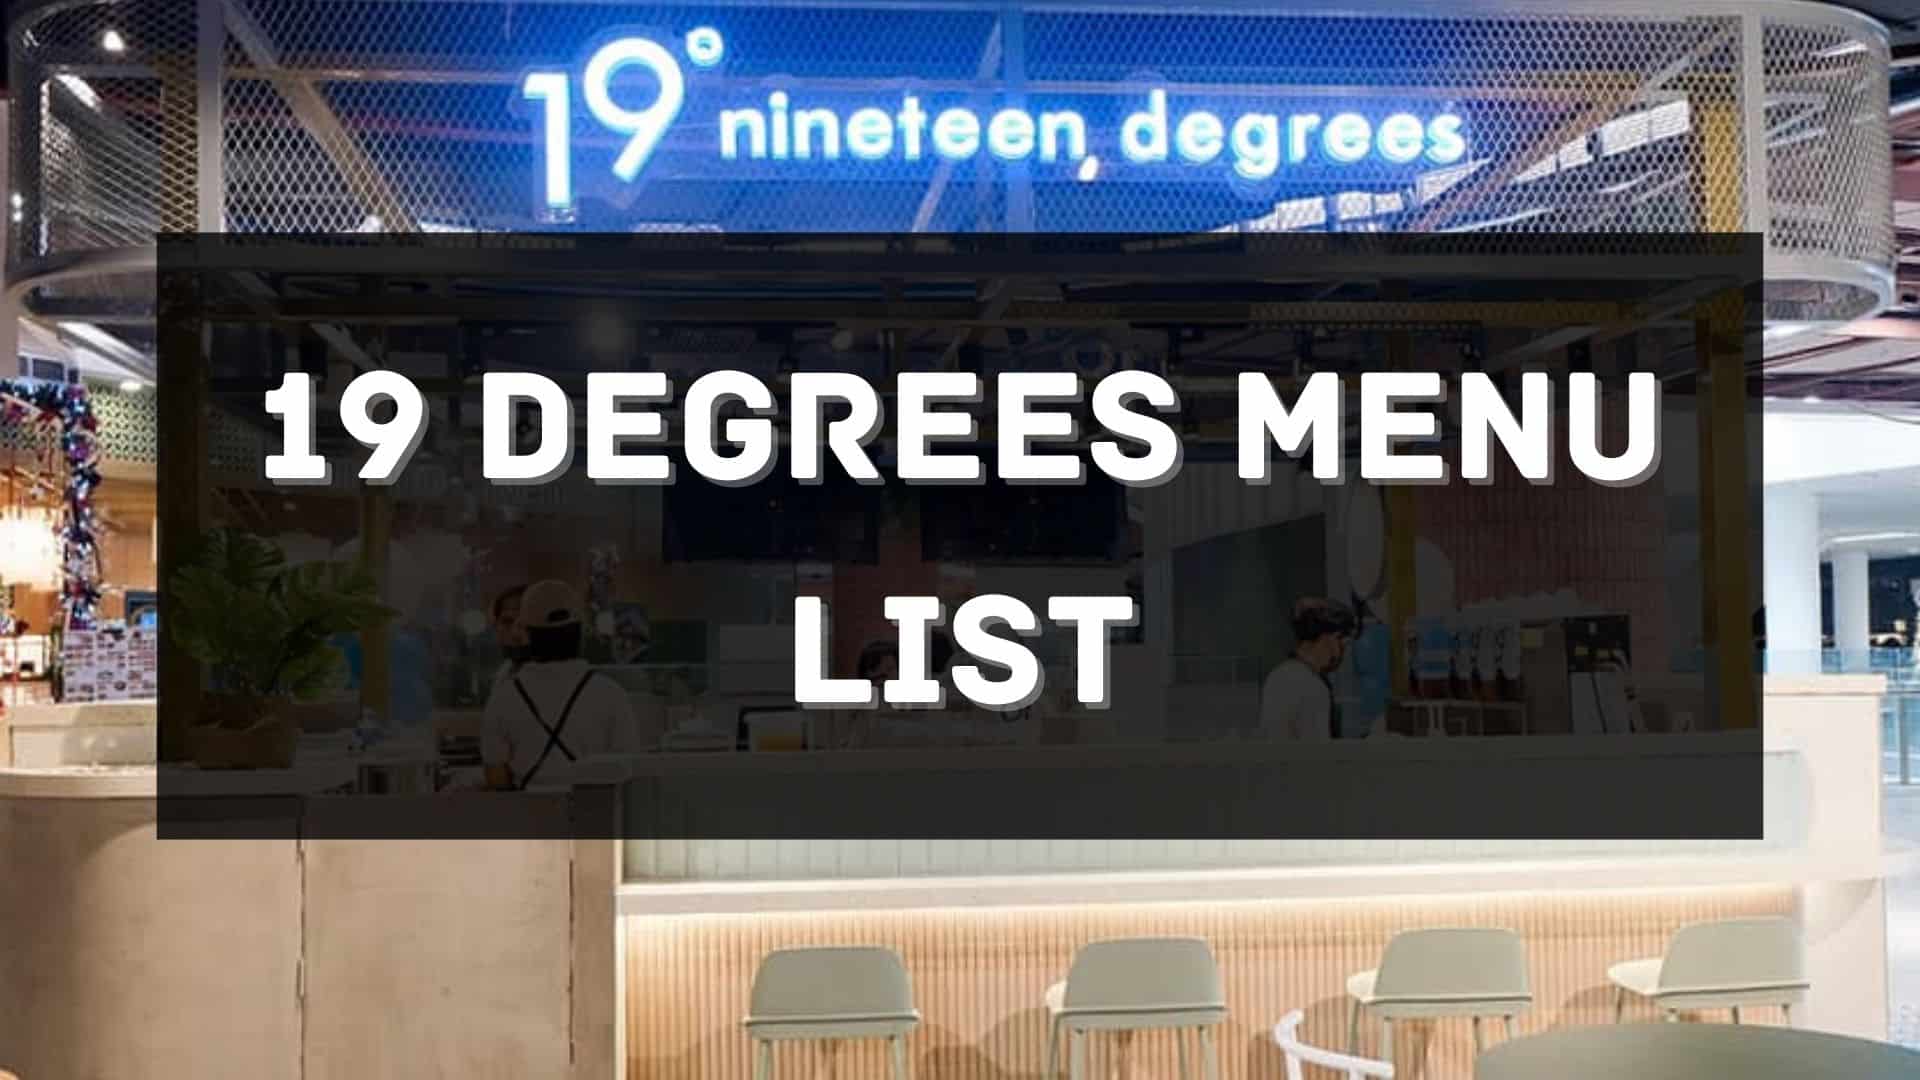 19 degrees menu prices philippines